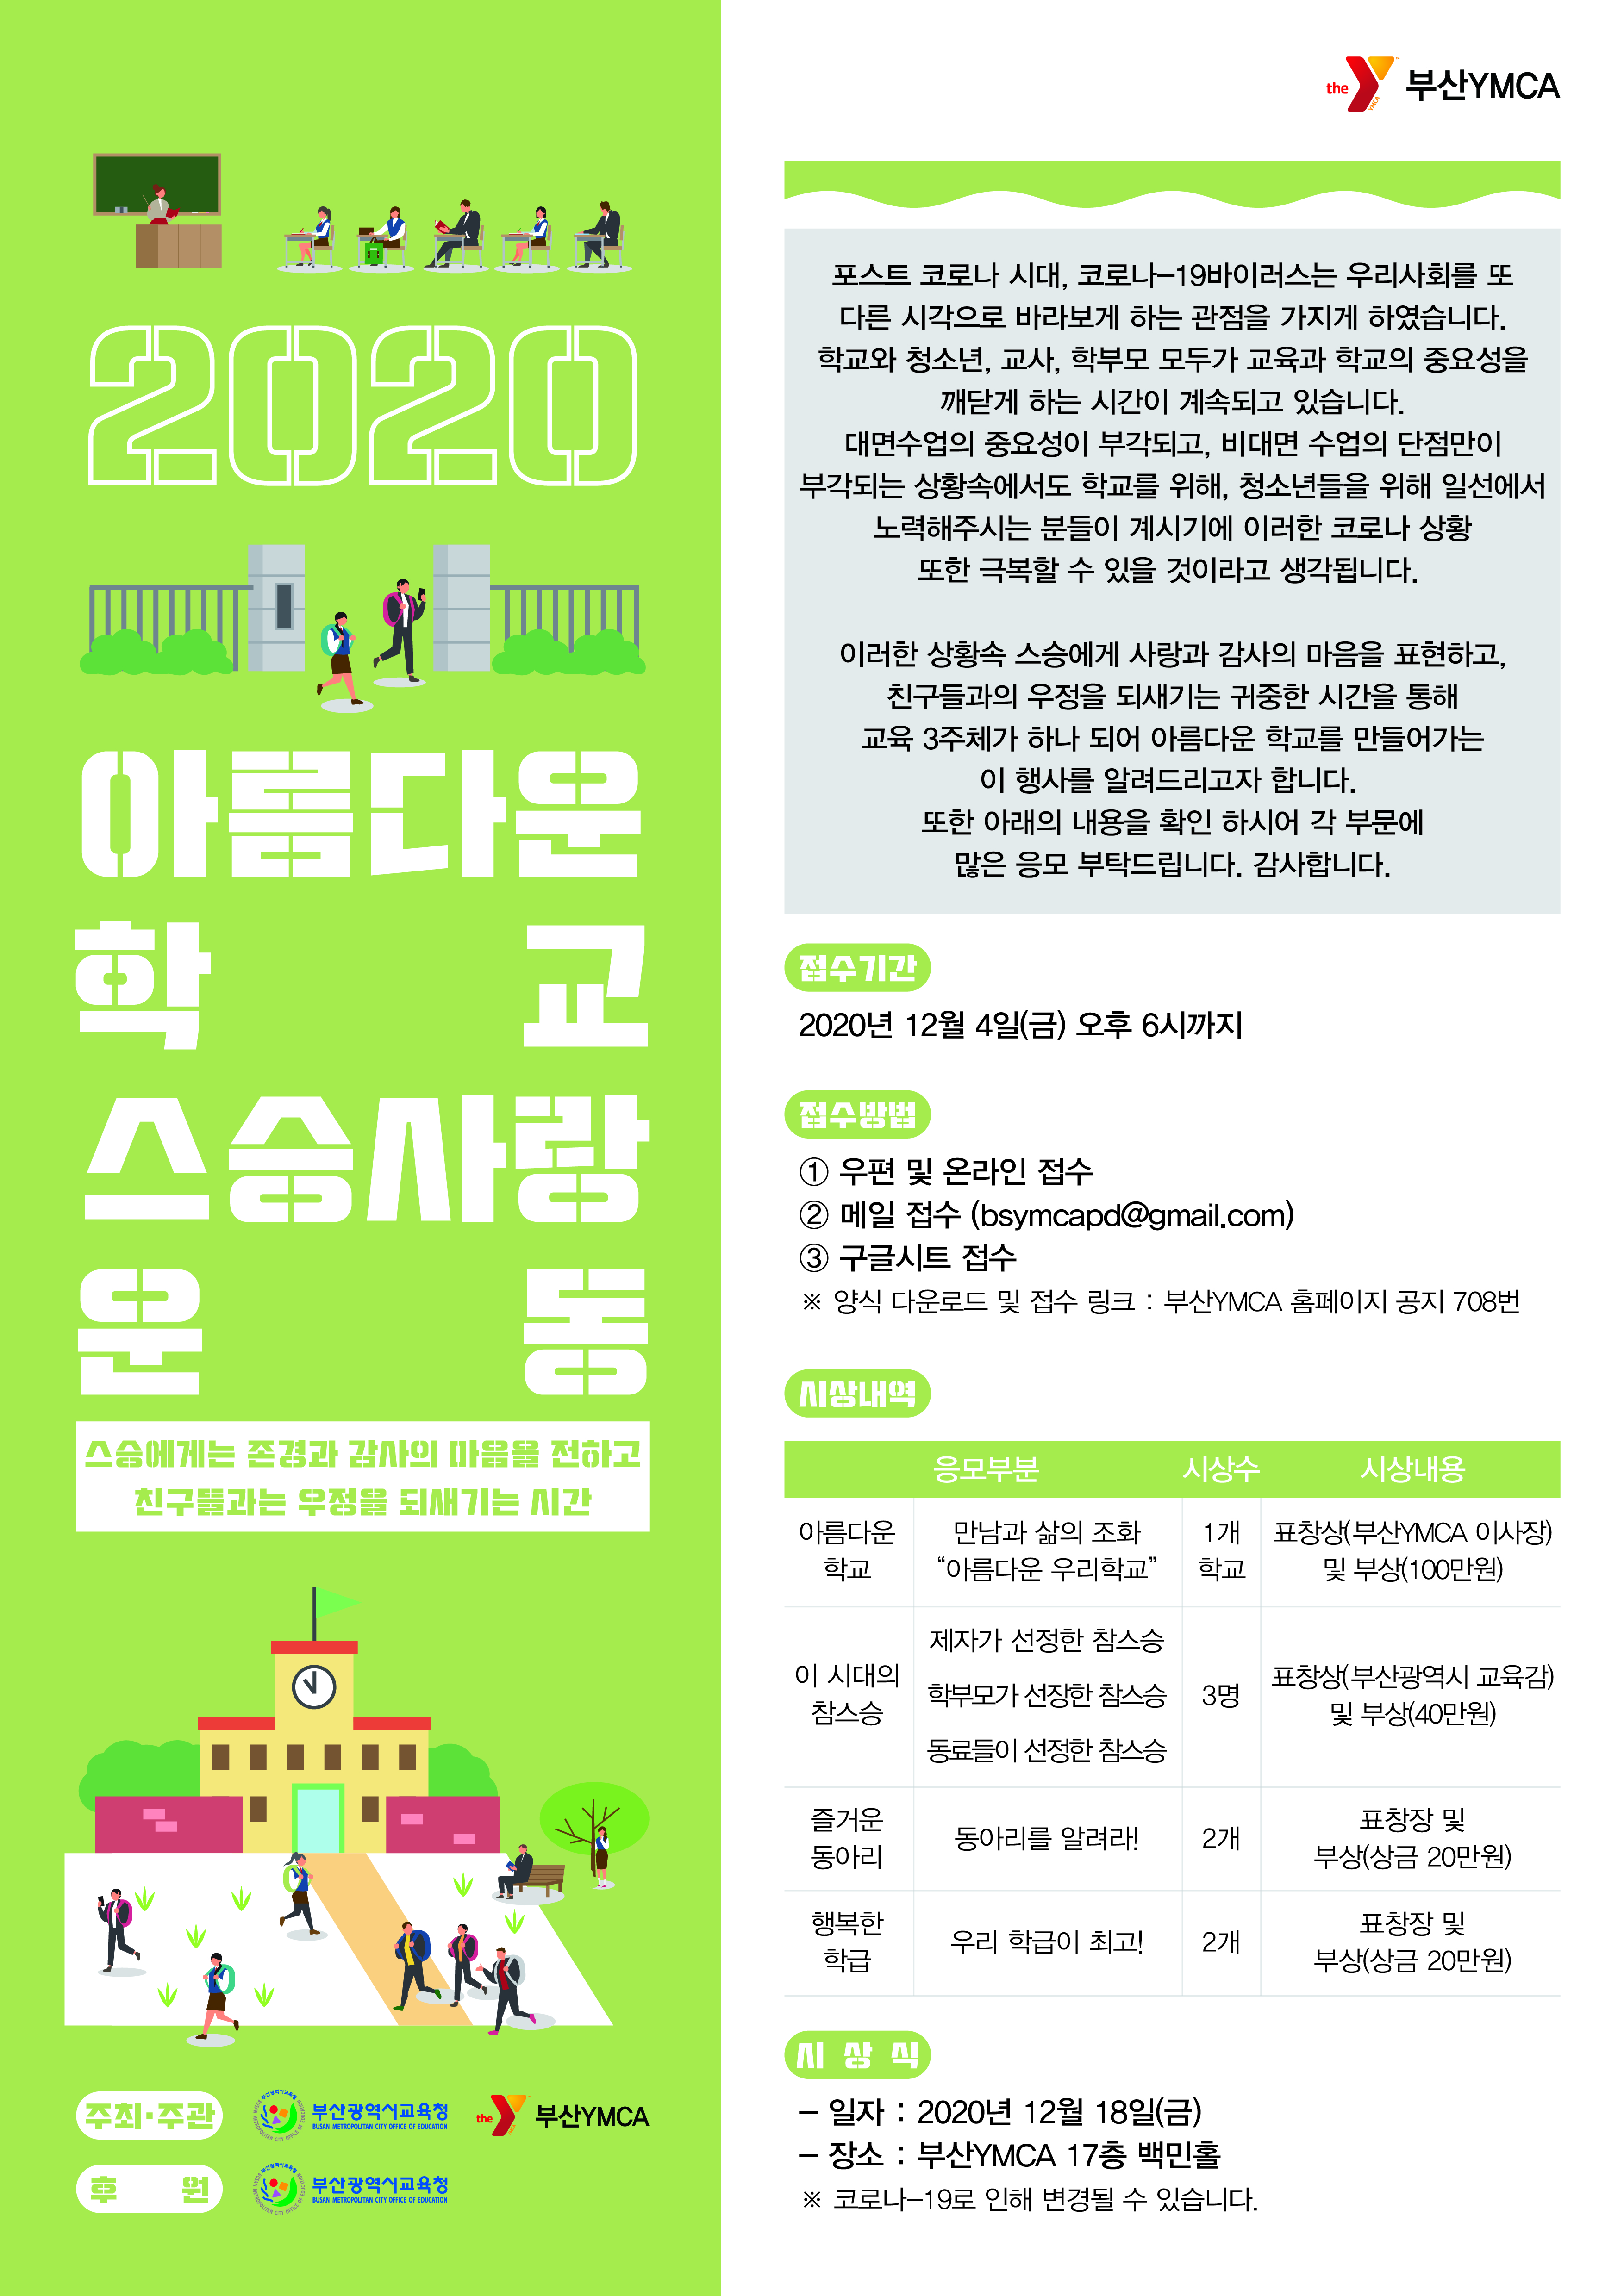 2020 아름다운학교 스승사랑운동_웹포스터_1.0.jpg